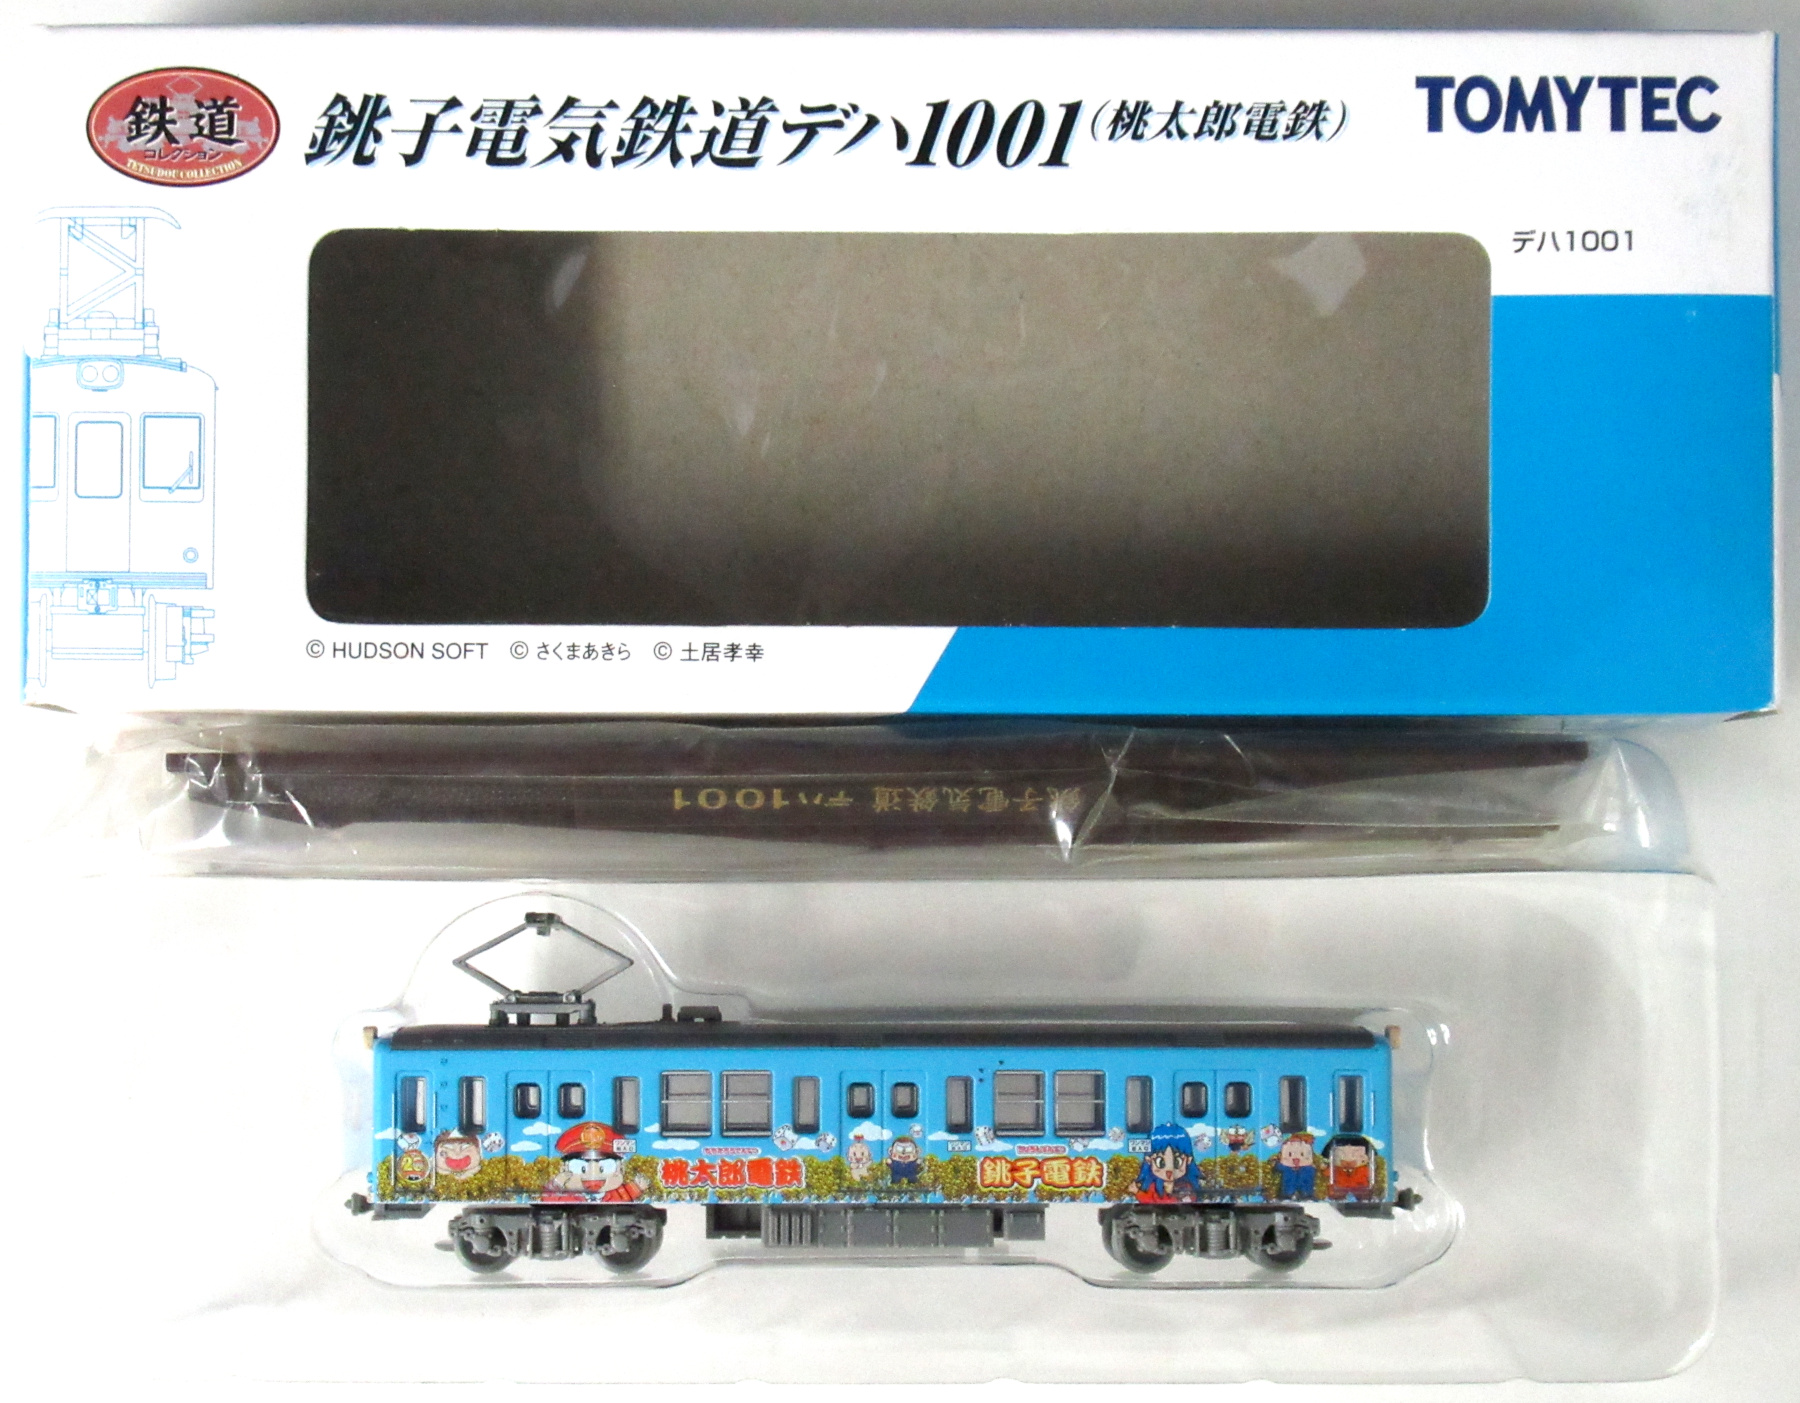 トミーテック鉄道コレクション第1弾 銚子電鉄 デハ301です